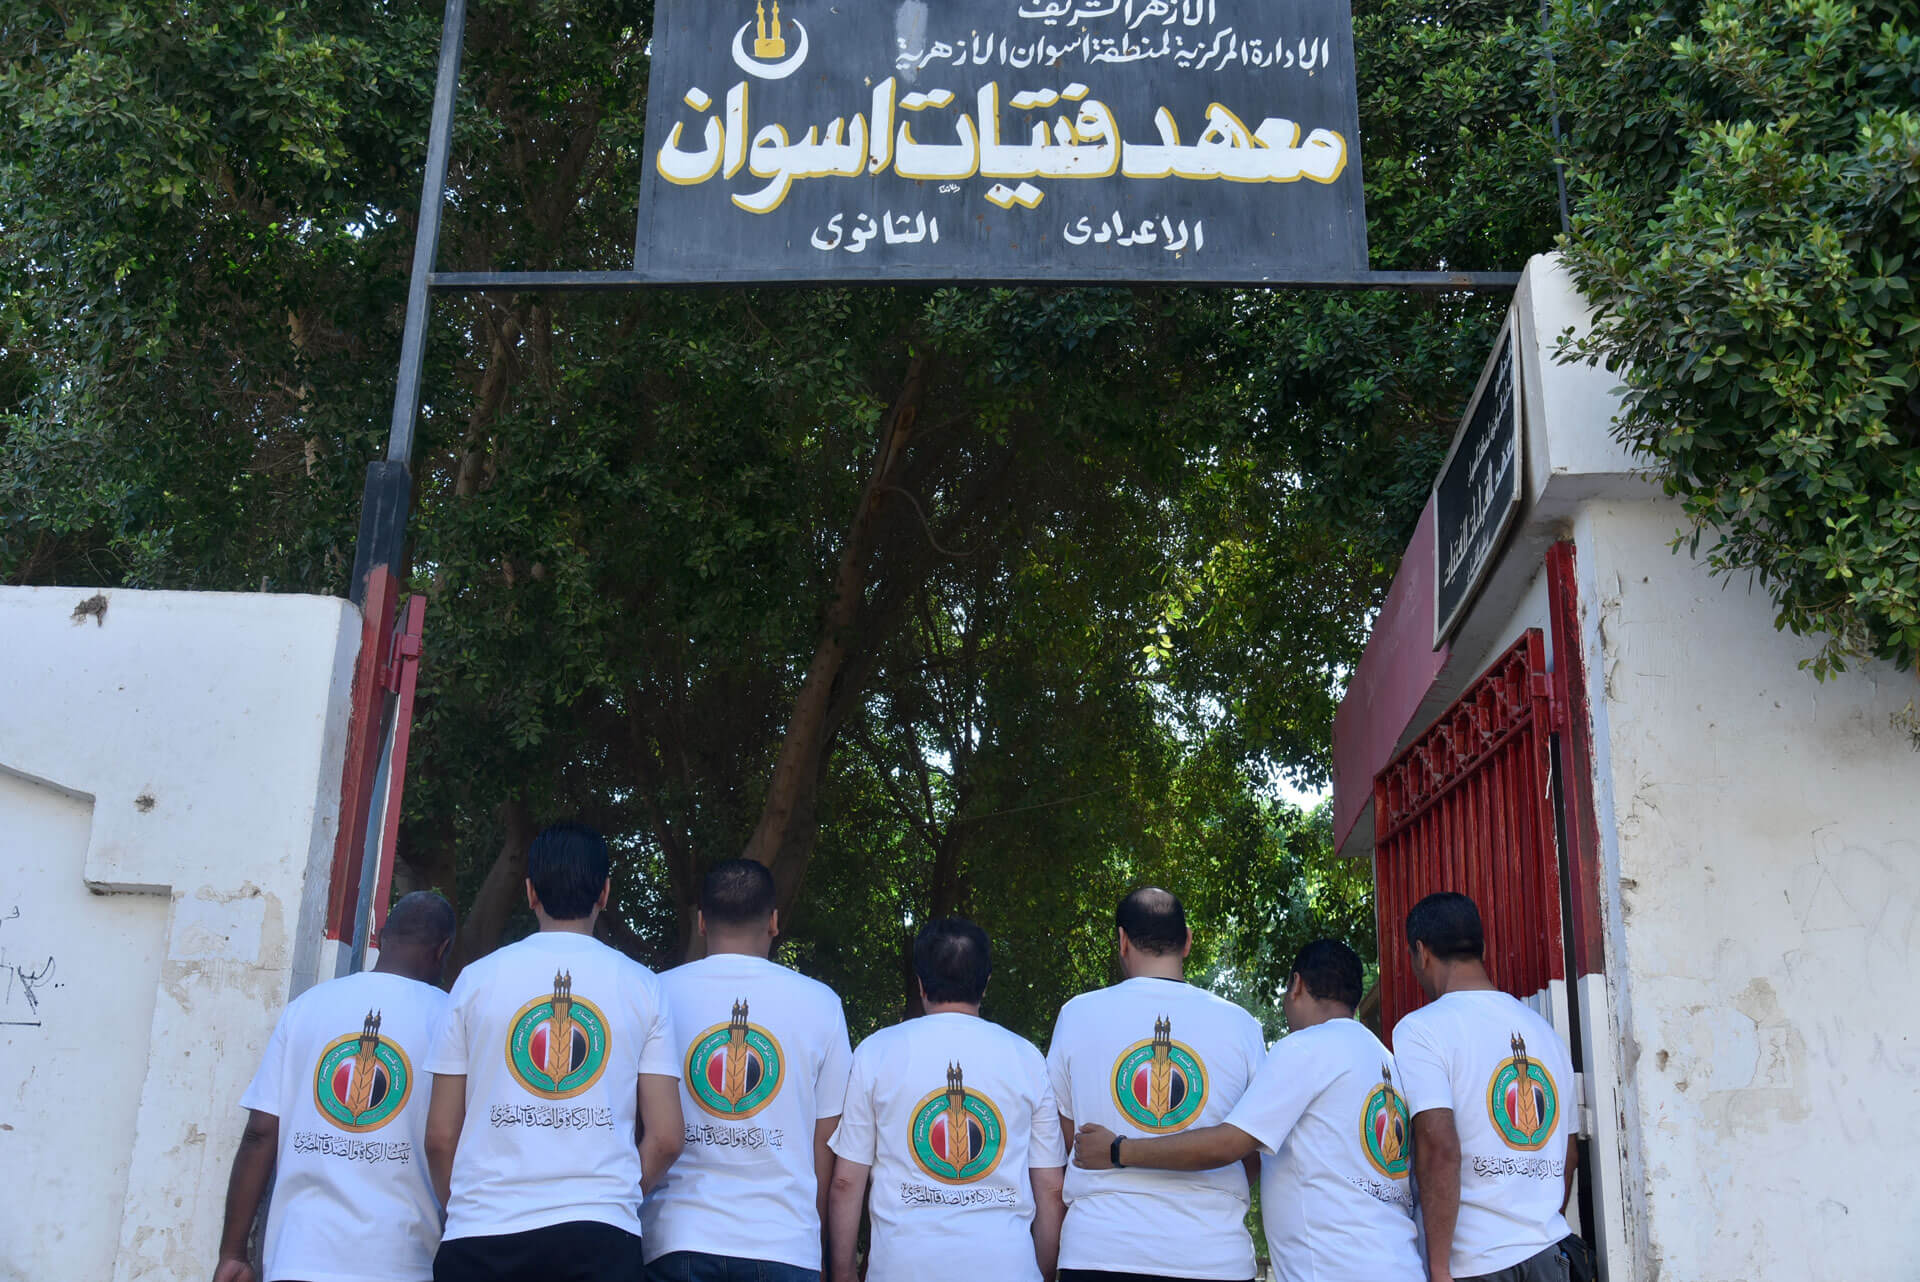 8بيت الزكاة والصدقات المصري يبدأ حملة لتوزيع ١٠٠ ألف شنطة مدرسية بمسلتزماتها على الأيتام وذوي الهمم في المدارس العامة والأزهرية1695648184